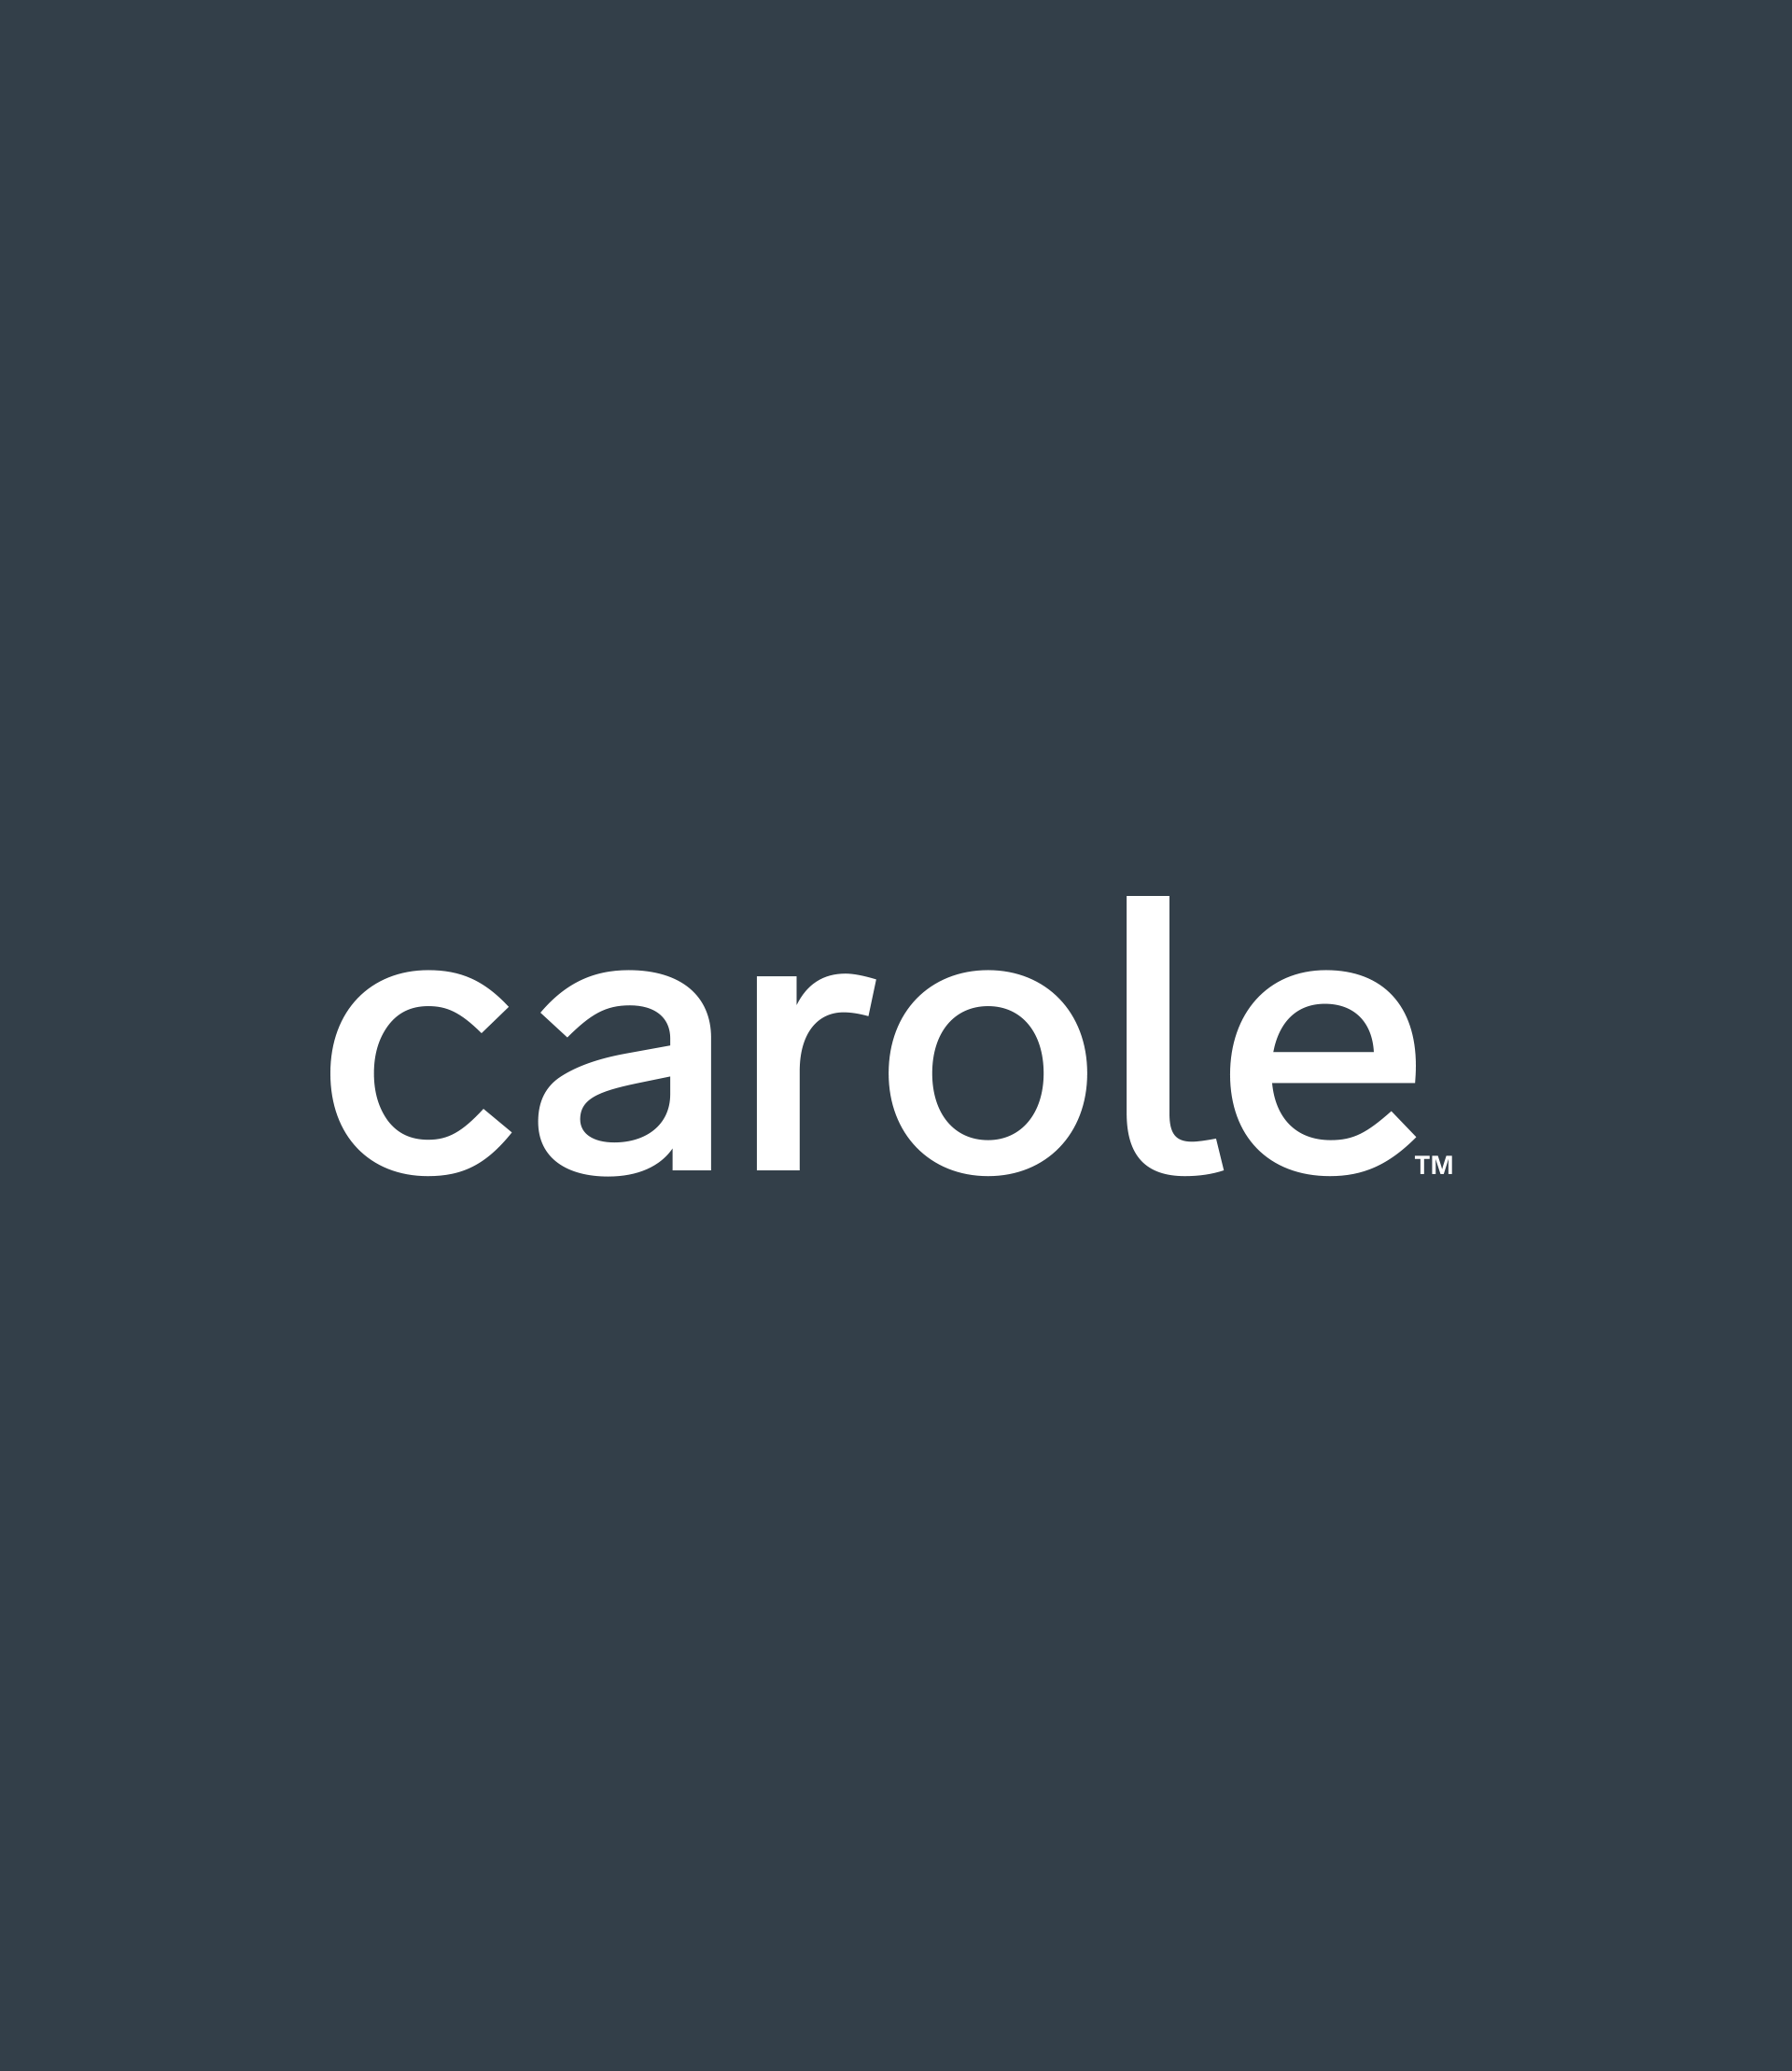 White Carole Fabrics logo on slate blue background.